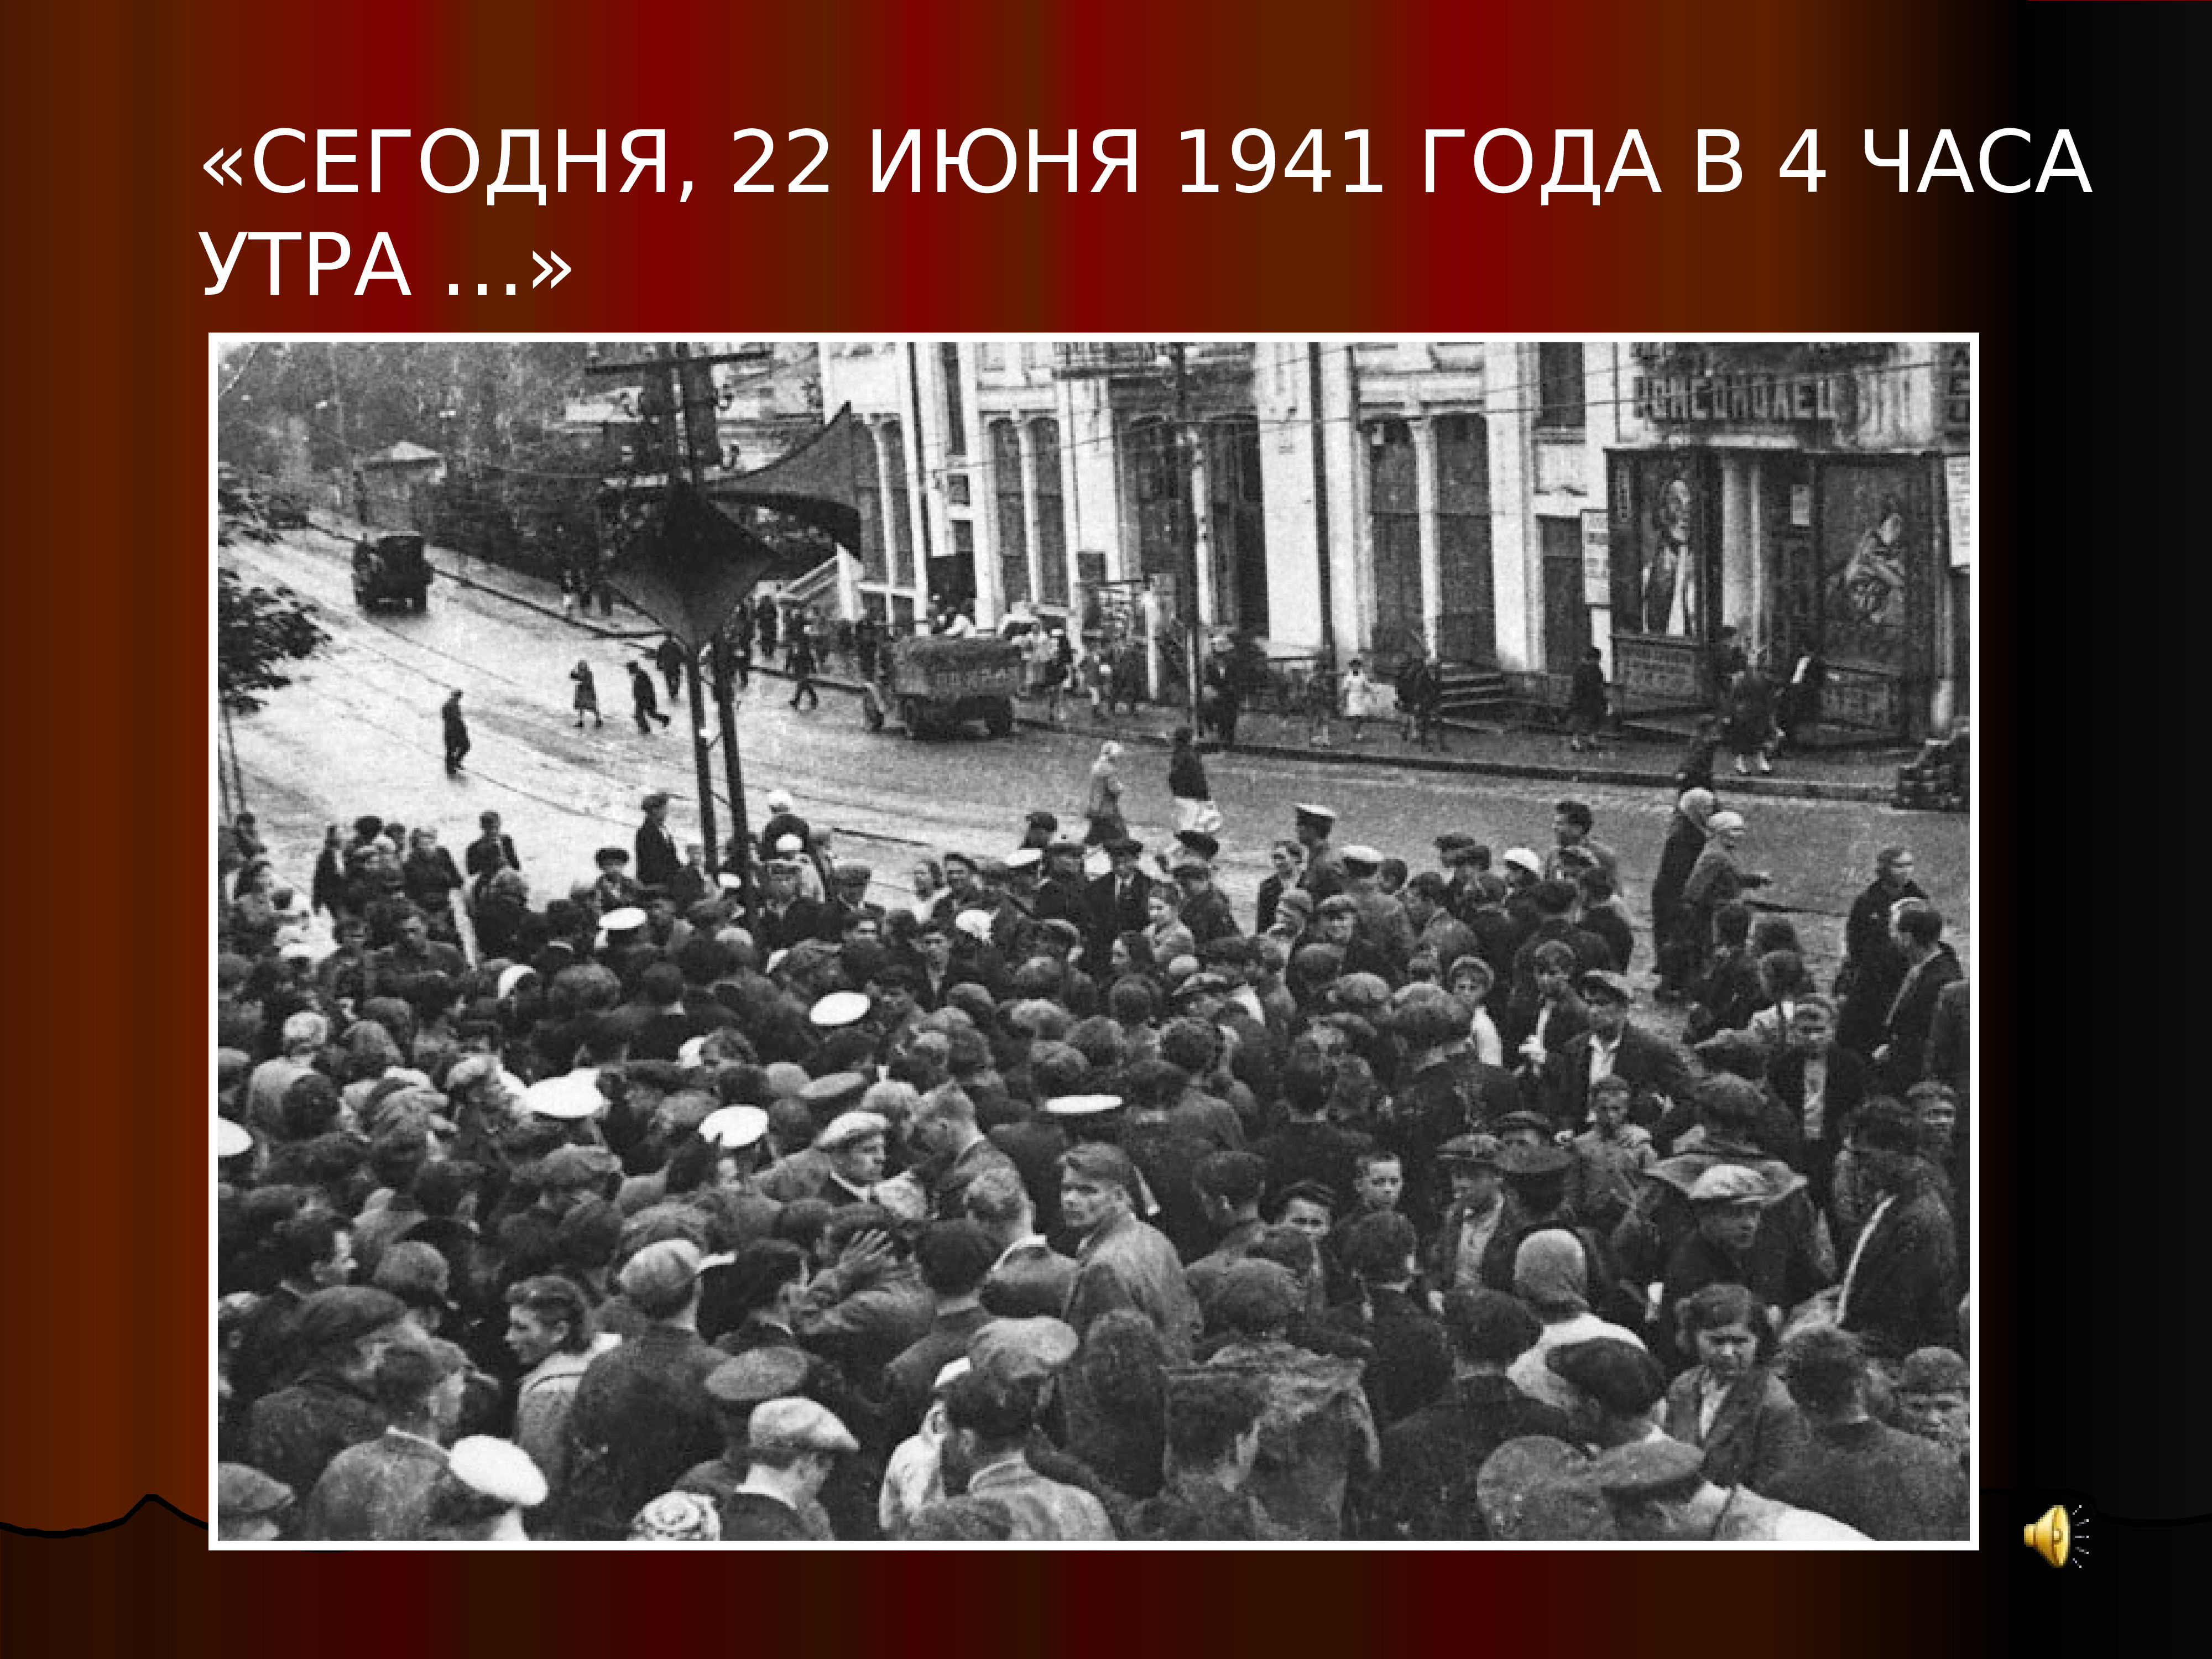 22 июня 1941 года начало великой отечественной. 22 Июня 1941 года начало Великой Отечественной войны 1941-1945. Начало ВОВ 1941 года.